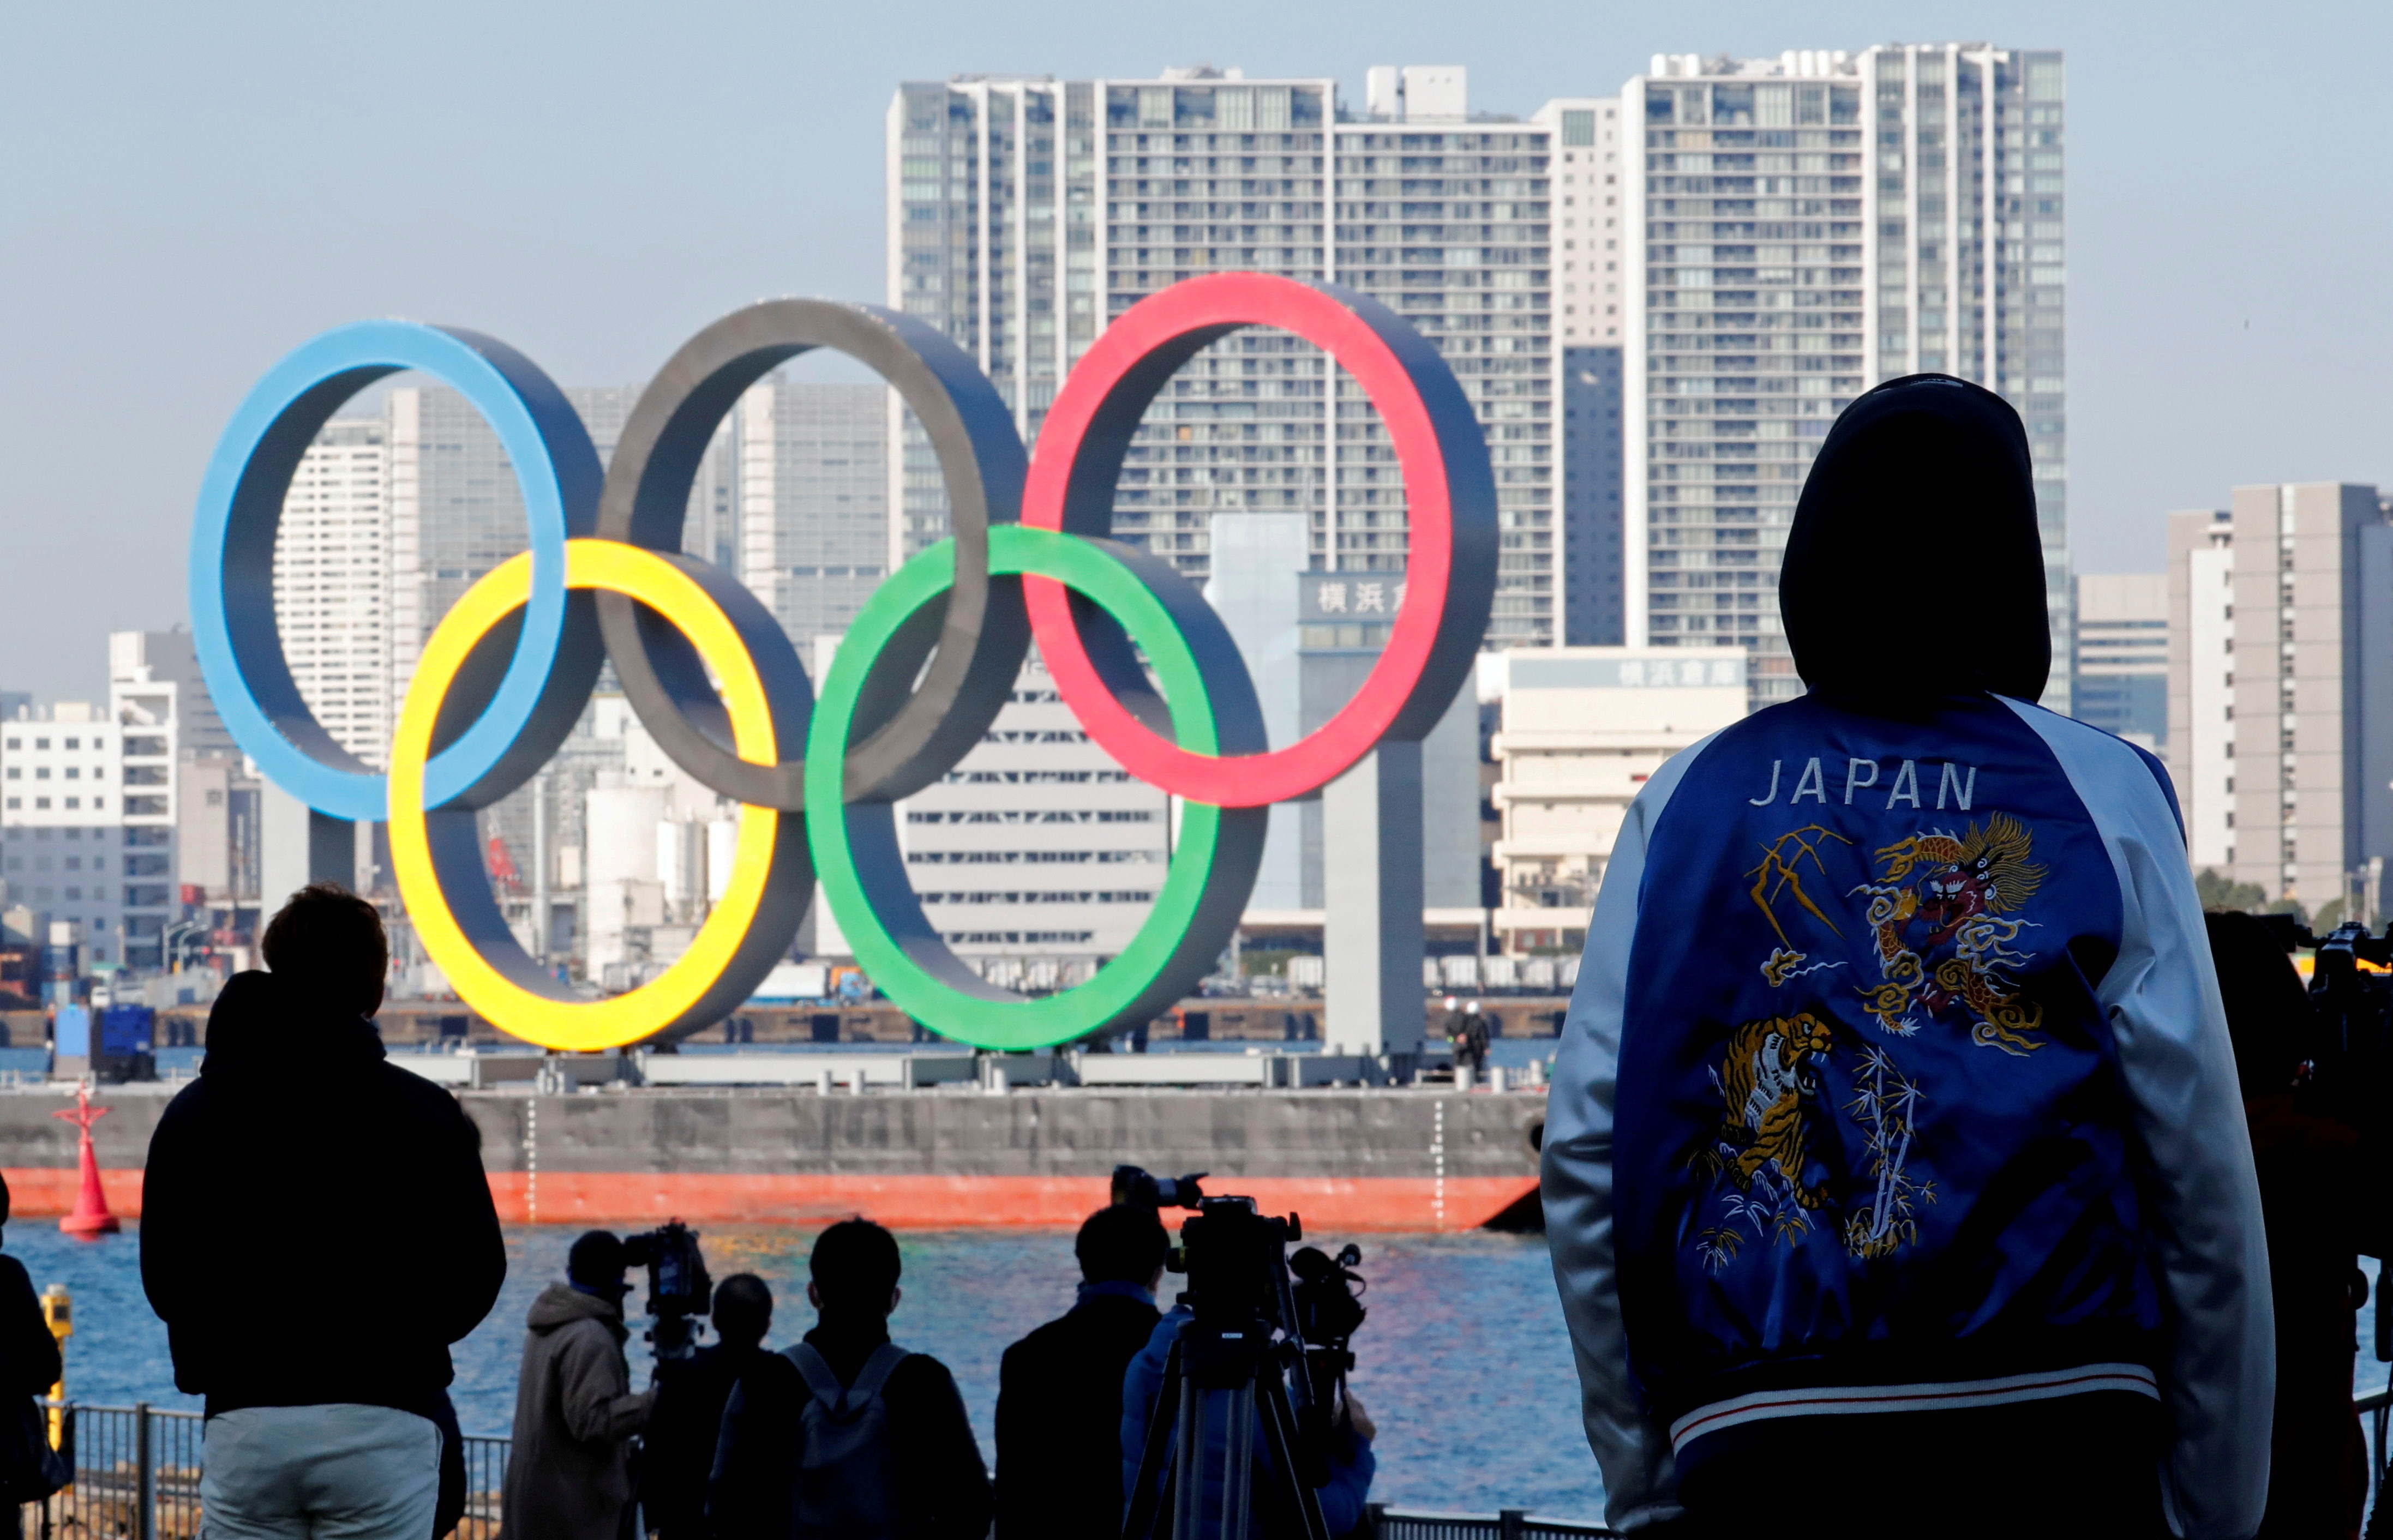 日本,疫情,東京奧運,COVID-19,緊急宣言,國際奧委會,違約金,運動員,觀光